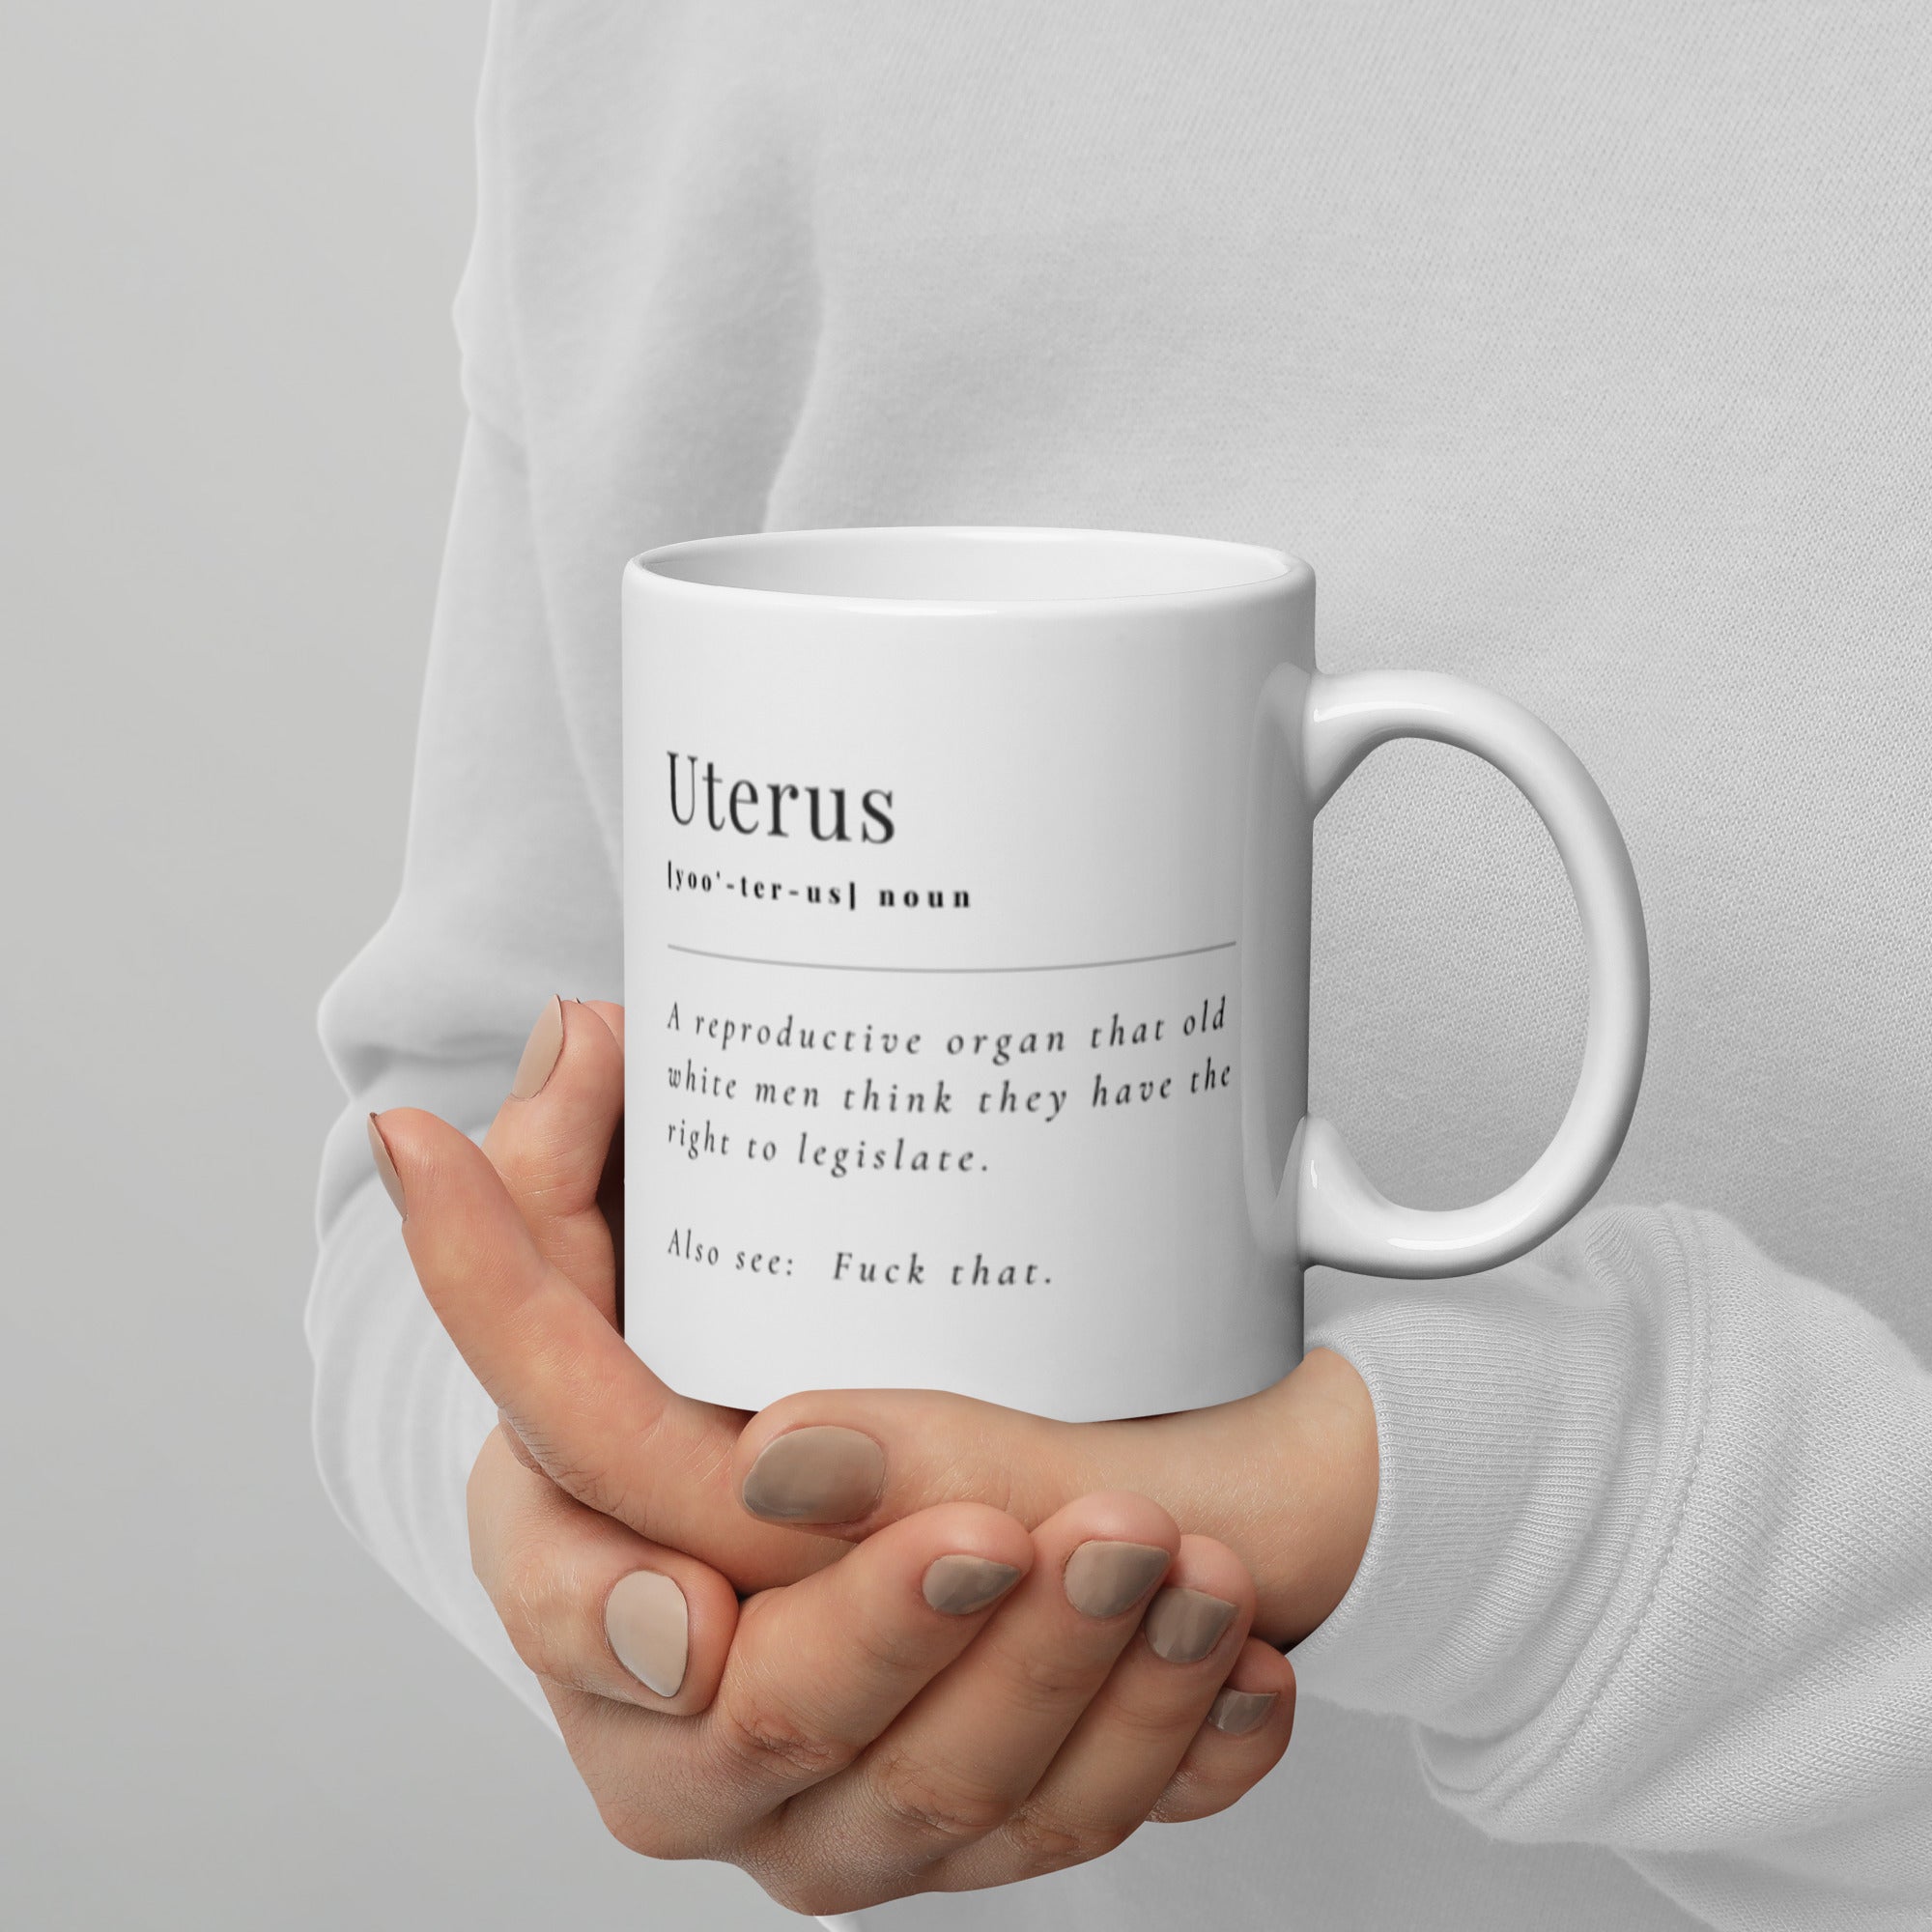 Uterus - White glossy mug